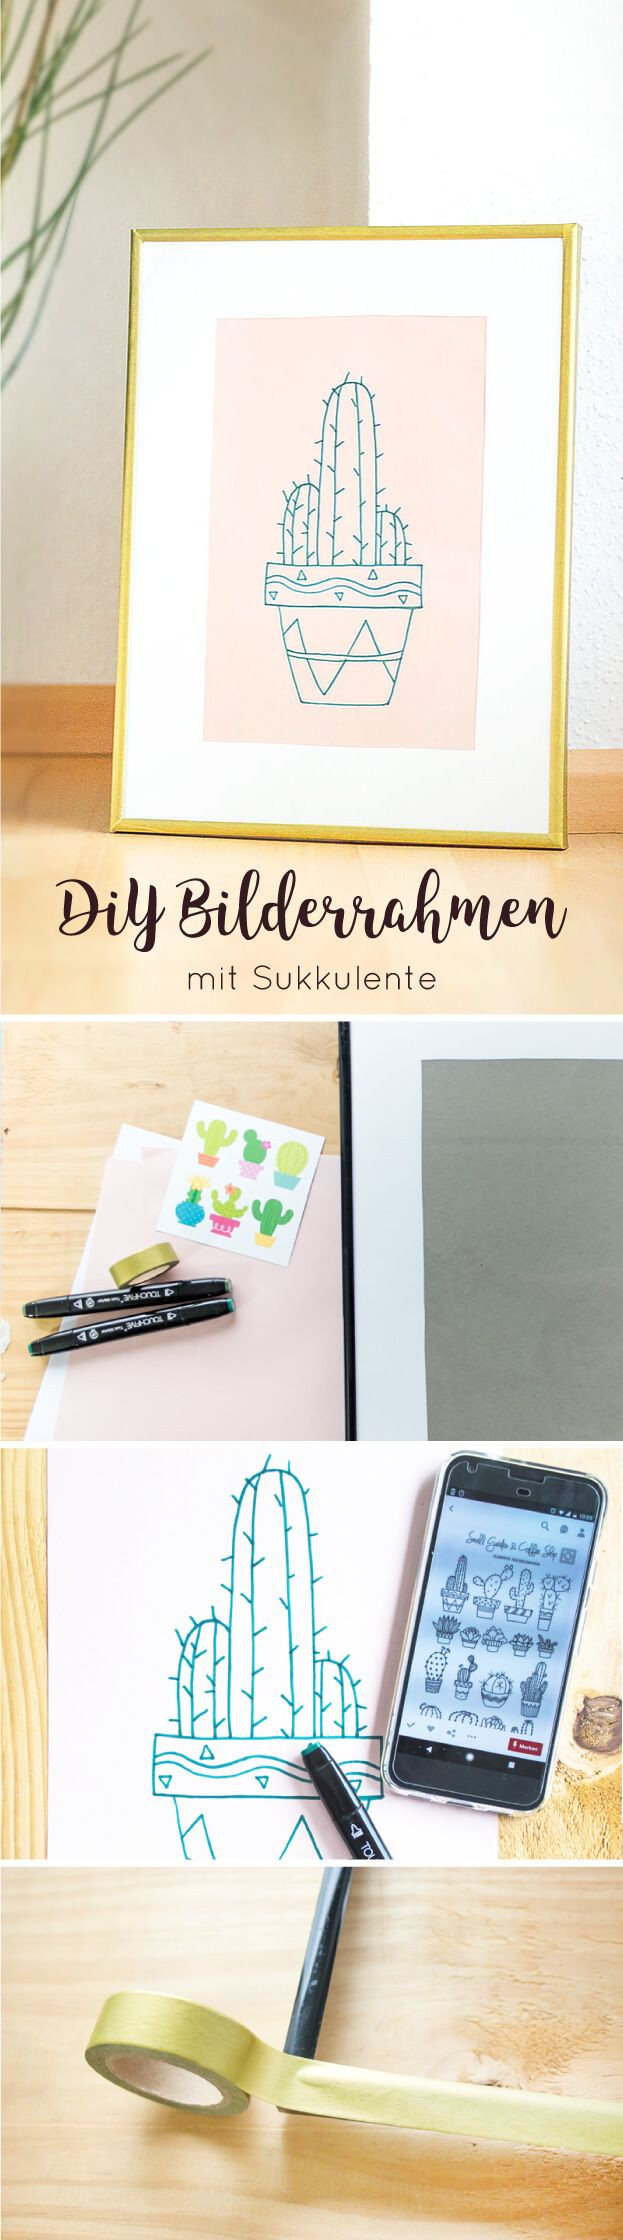 Was Bedeutet Diy Auf Deutsch
 17 Best images about DIY Ideen auf Deutsch on Pinterest